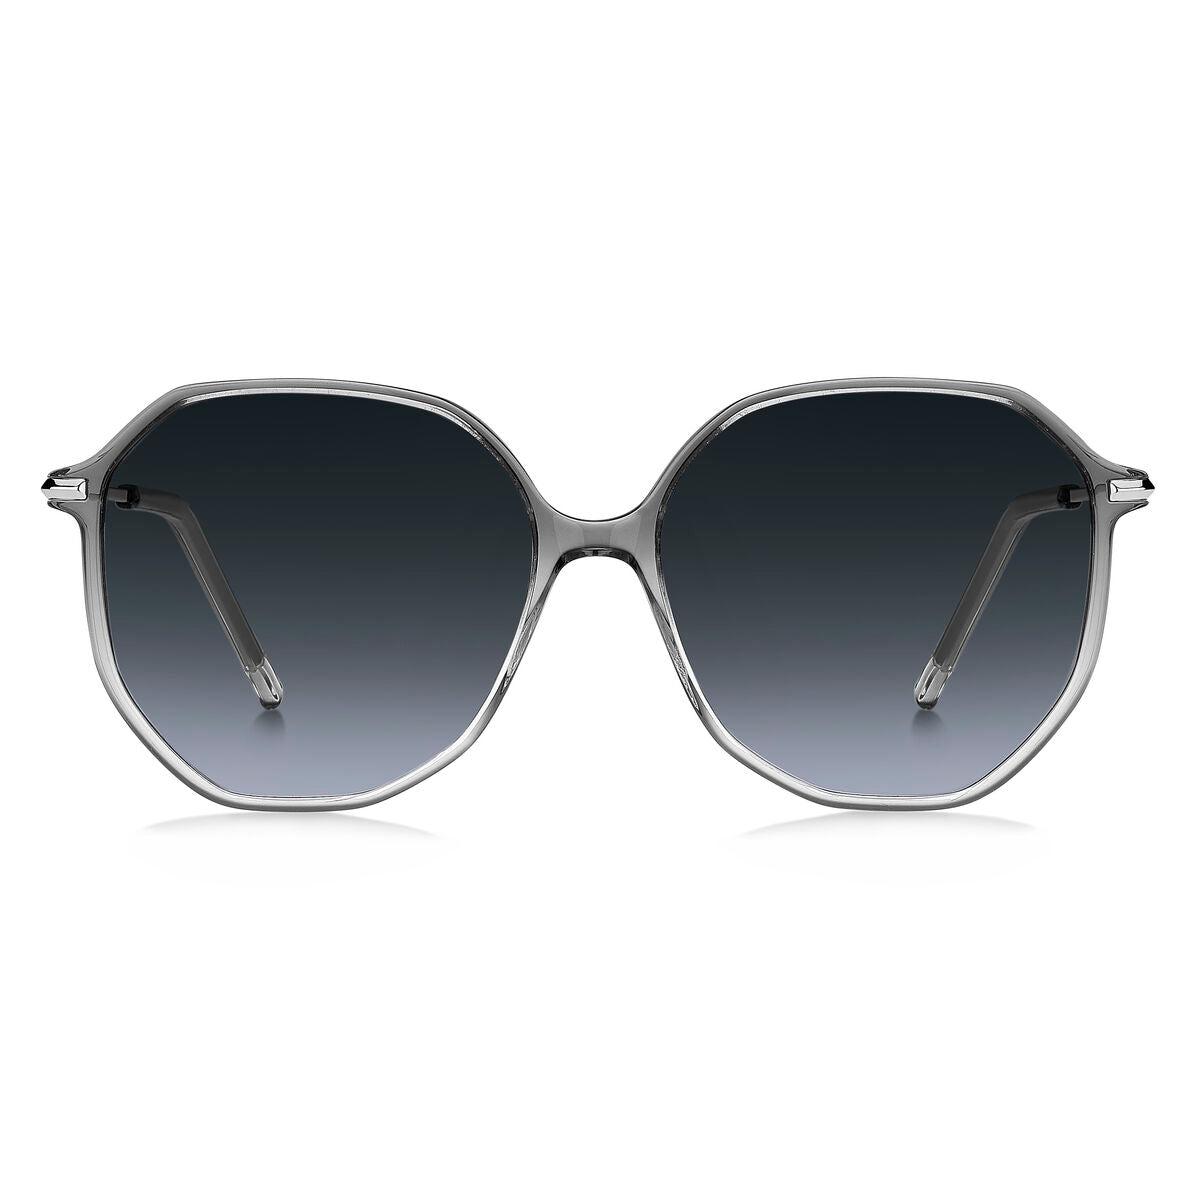 Kaufe Damensonnenbrille Hugo Boss BOSS-1329-S-FS2-9O bei AWK Flagship um € 90.00